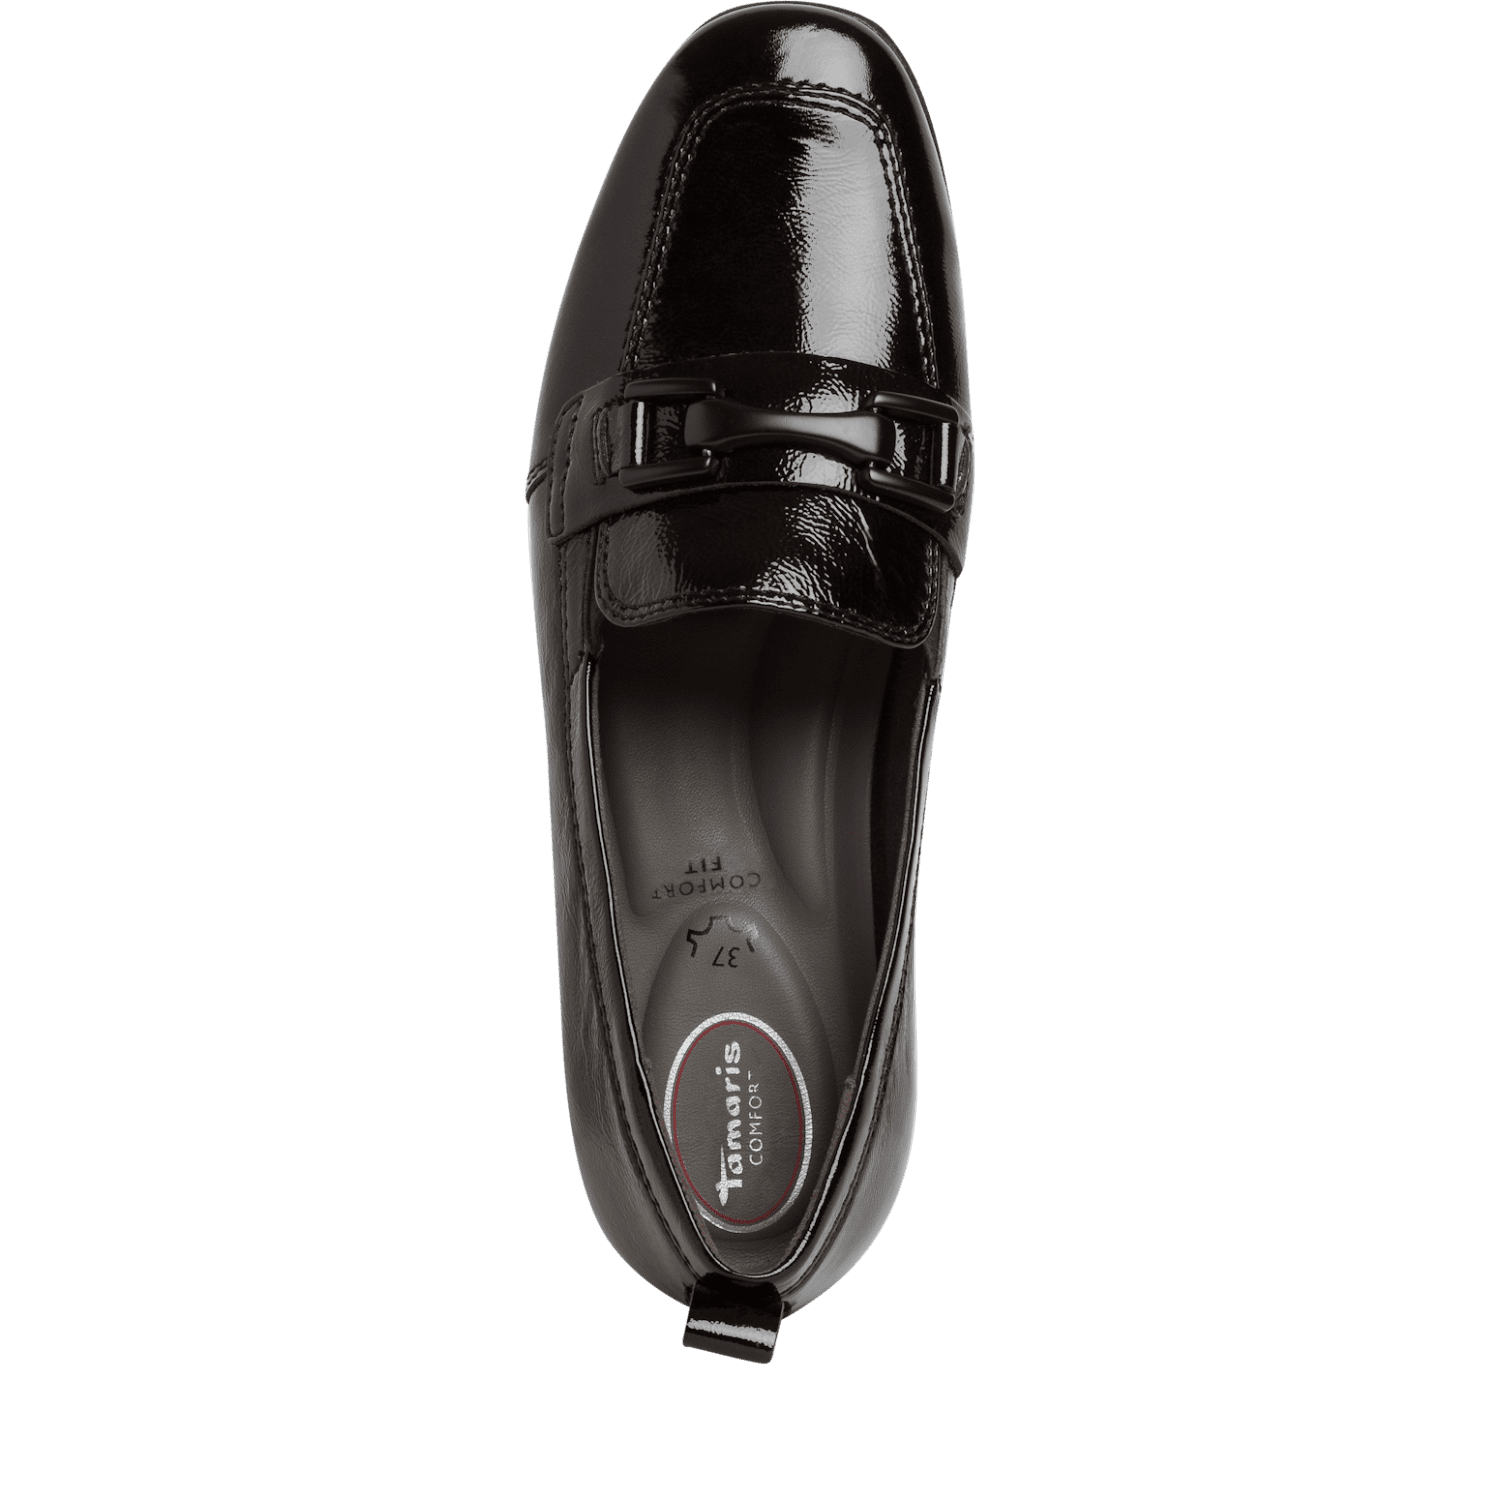 Tamaris 84205 - Ladies Loafer in Black Patent | Tamaris | Wisemans | Bantry | Shoe Shop | West Cork | Munster | Ireland